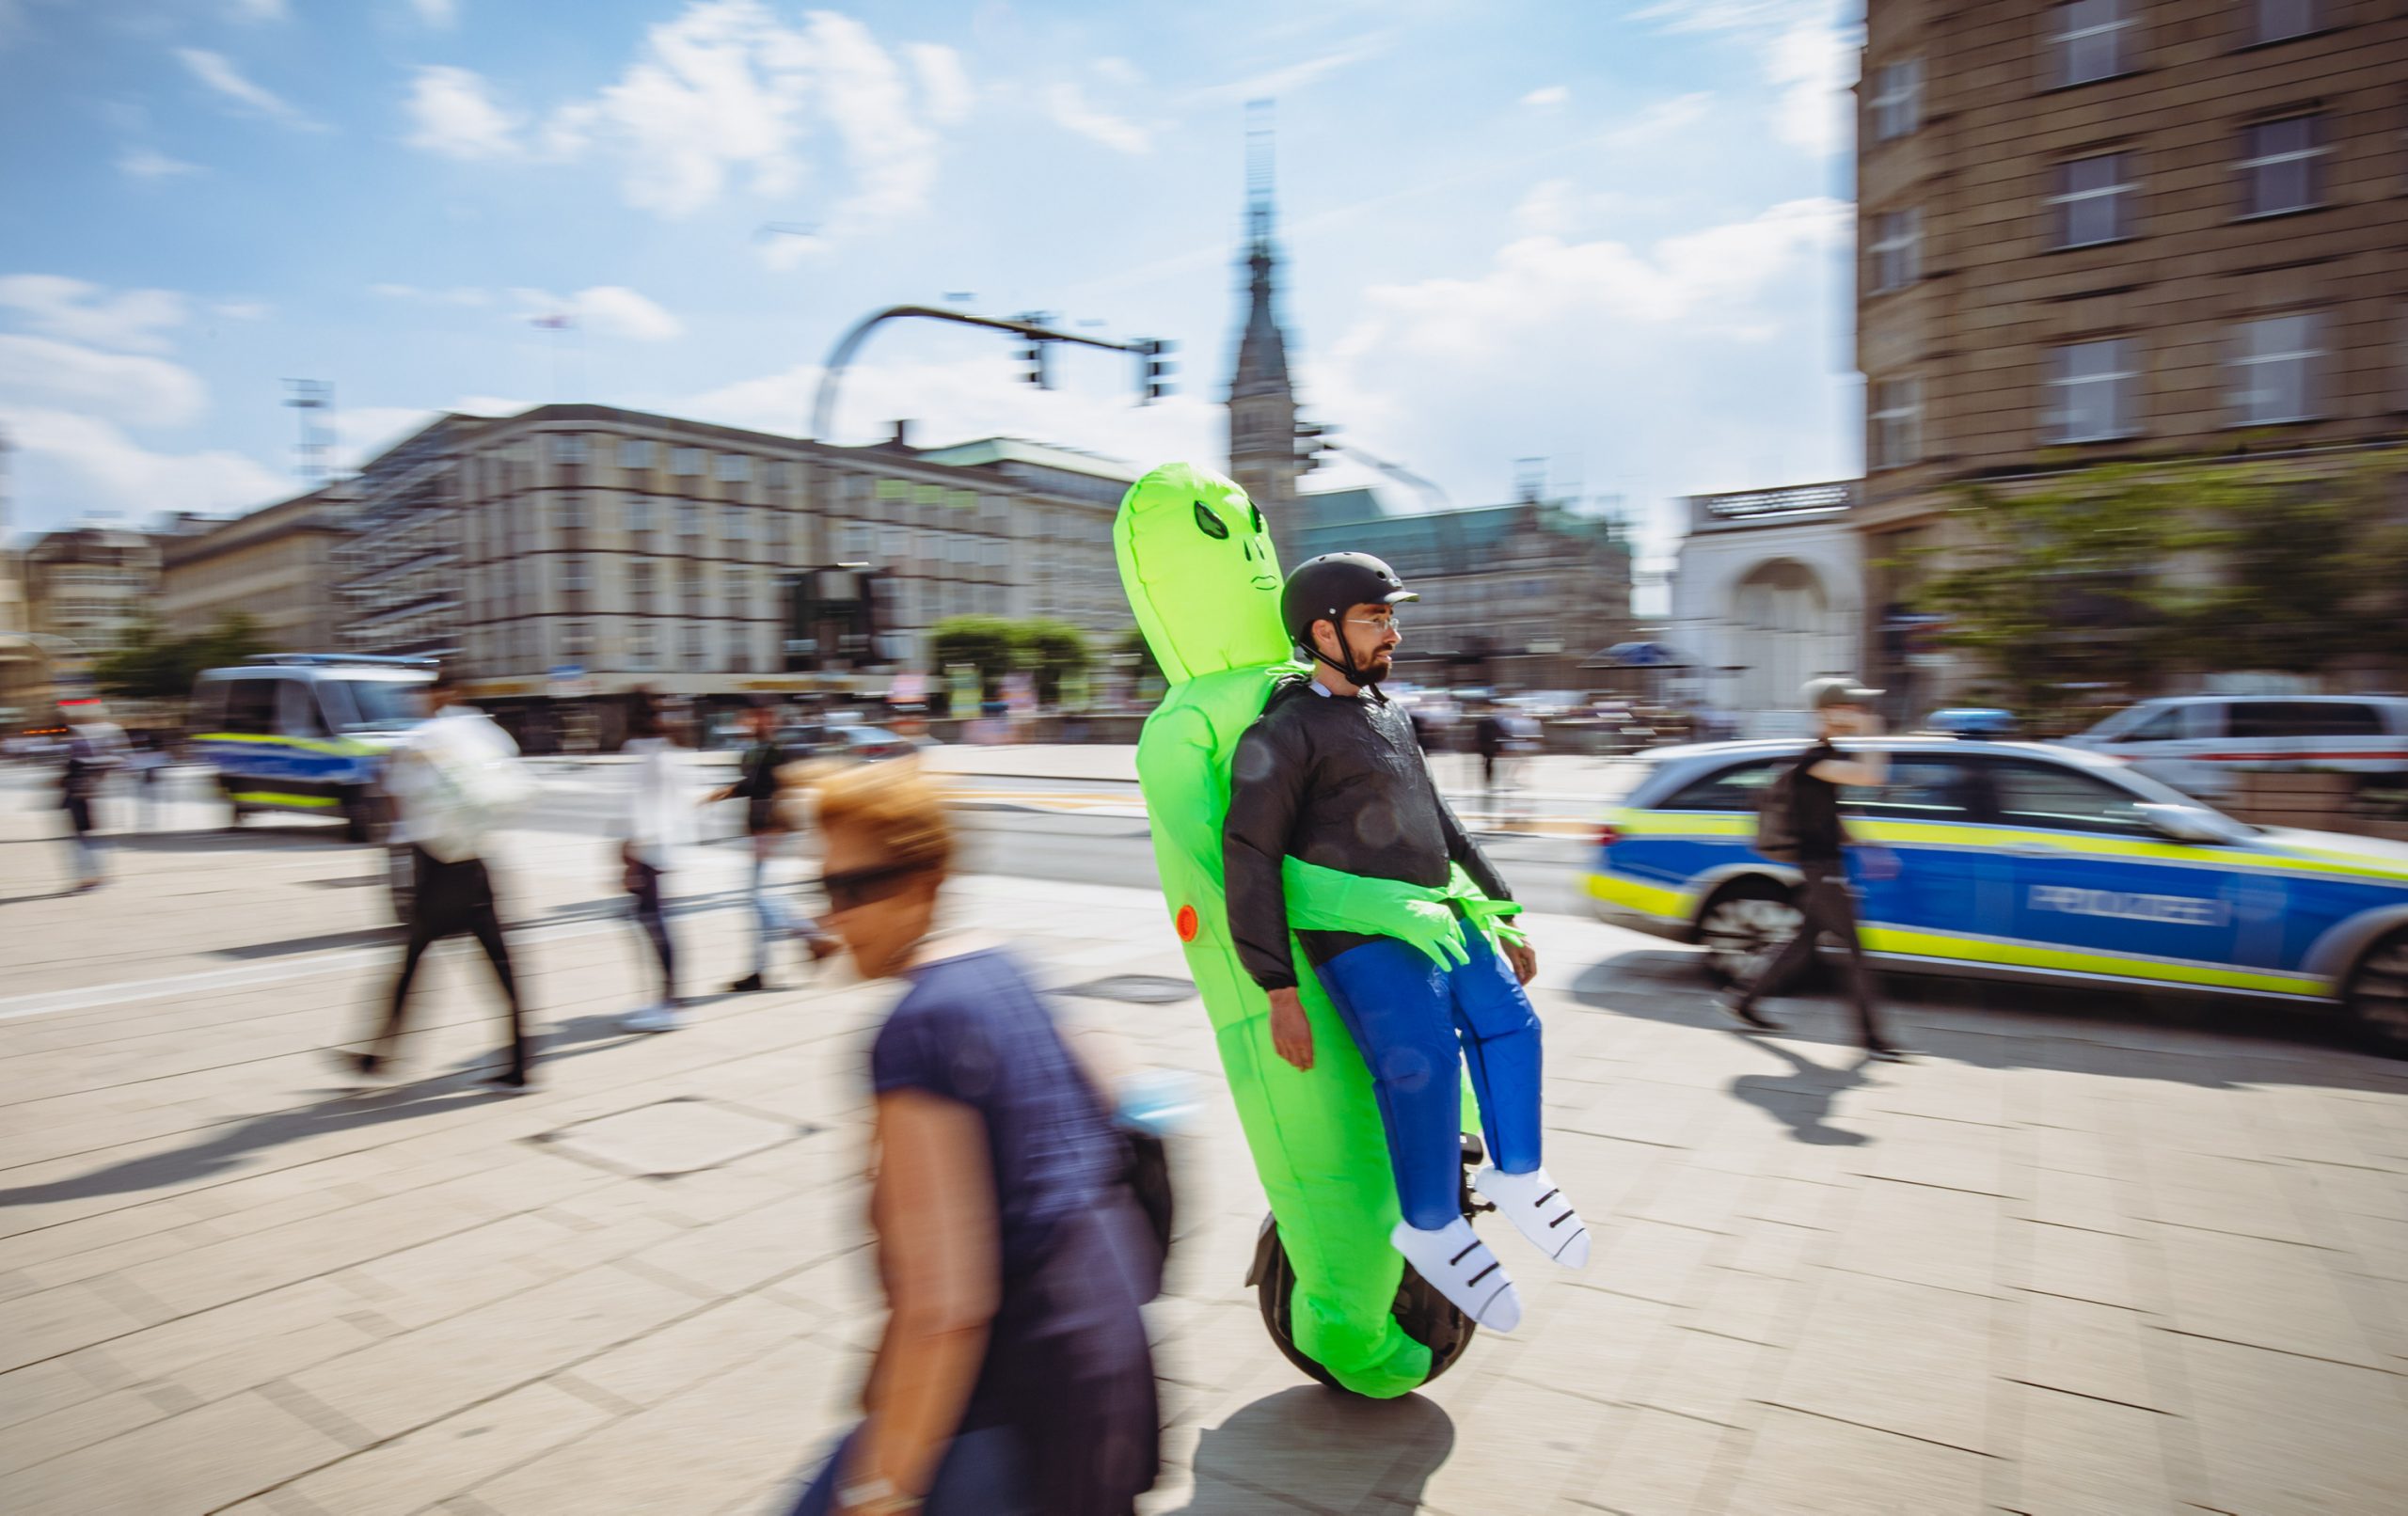 Markus Volk (37) aus Berlin kam als Alien verkleidet. „Ich will auffallen, um für dieses innovative Fortbewegungsmittel zu werben.“